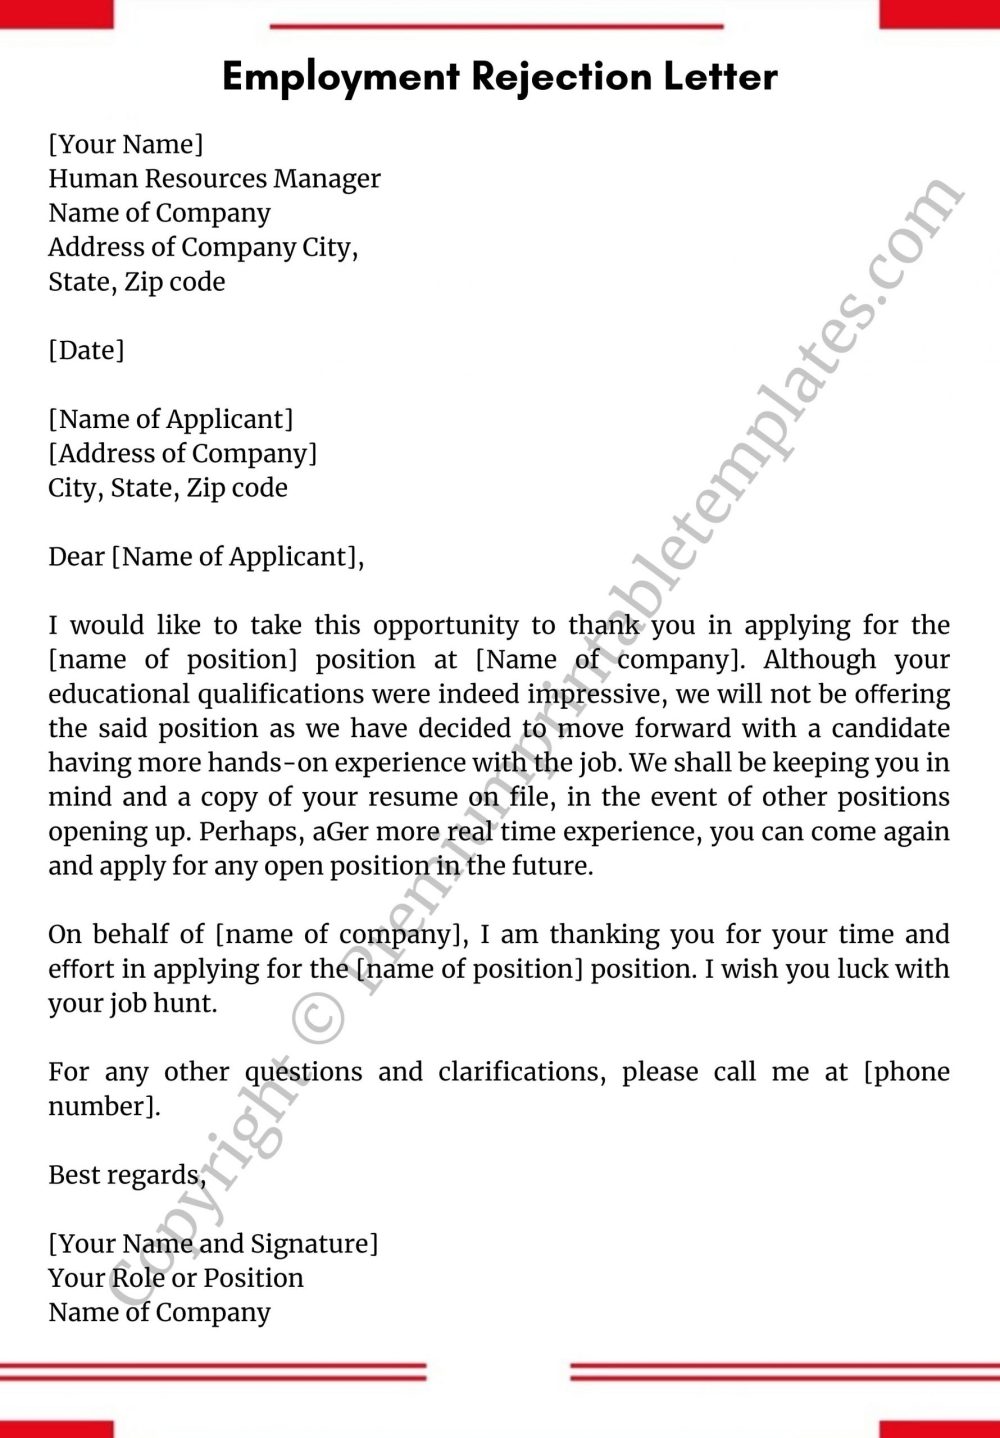 Employment Rejection Letter PDF